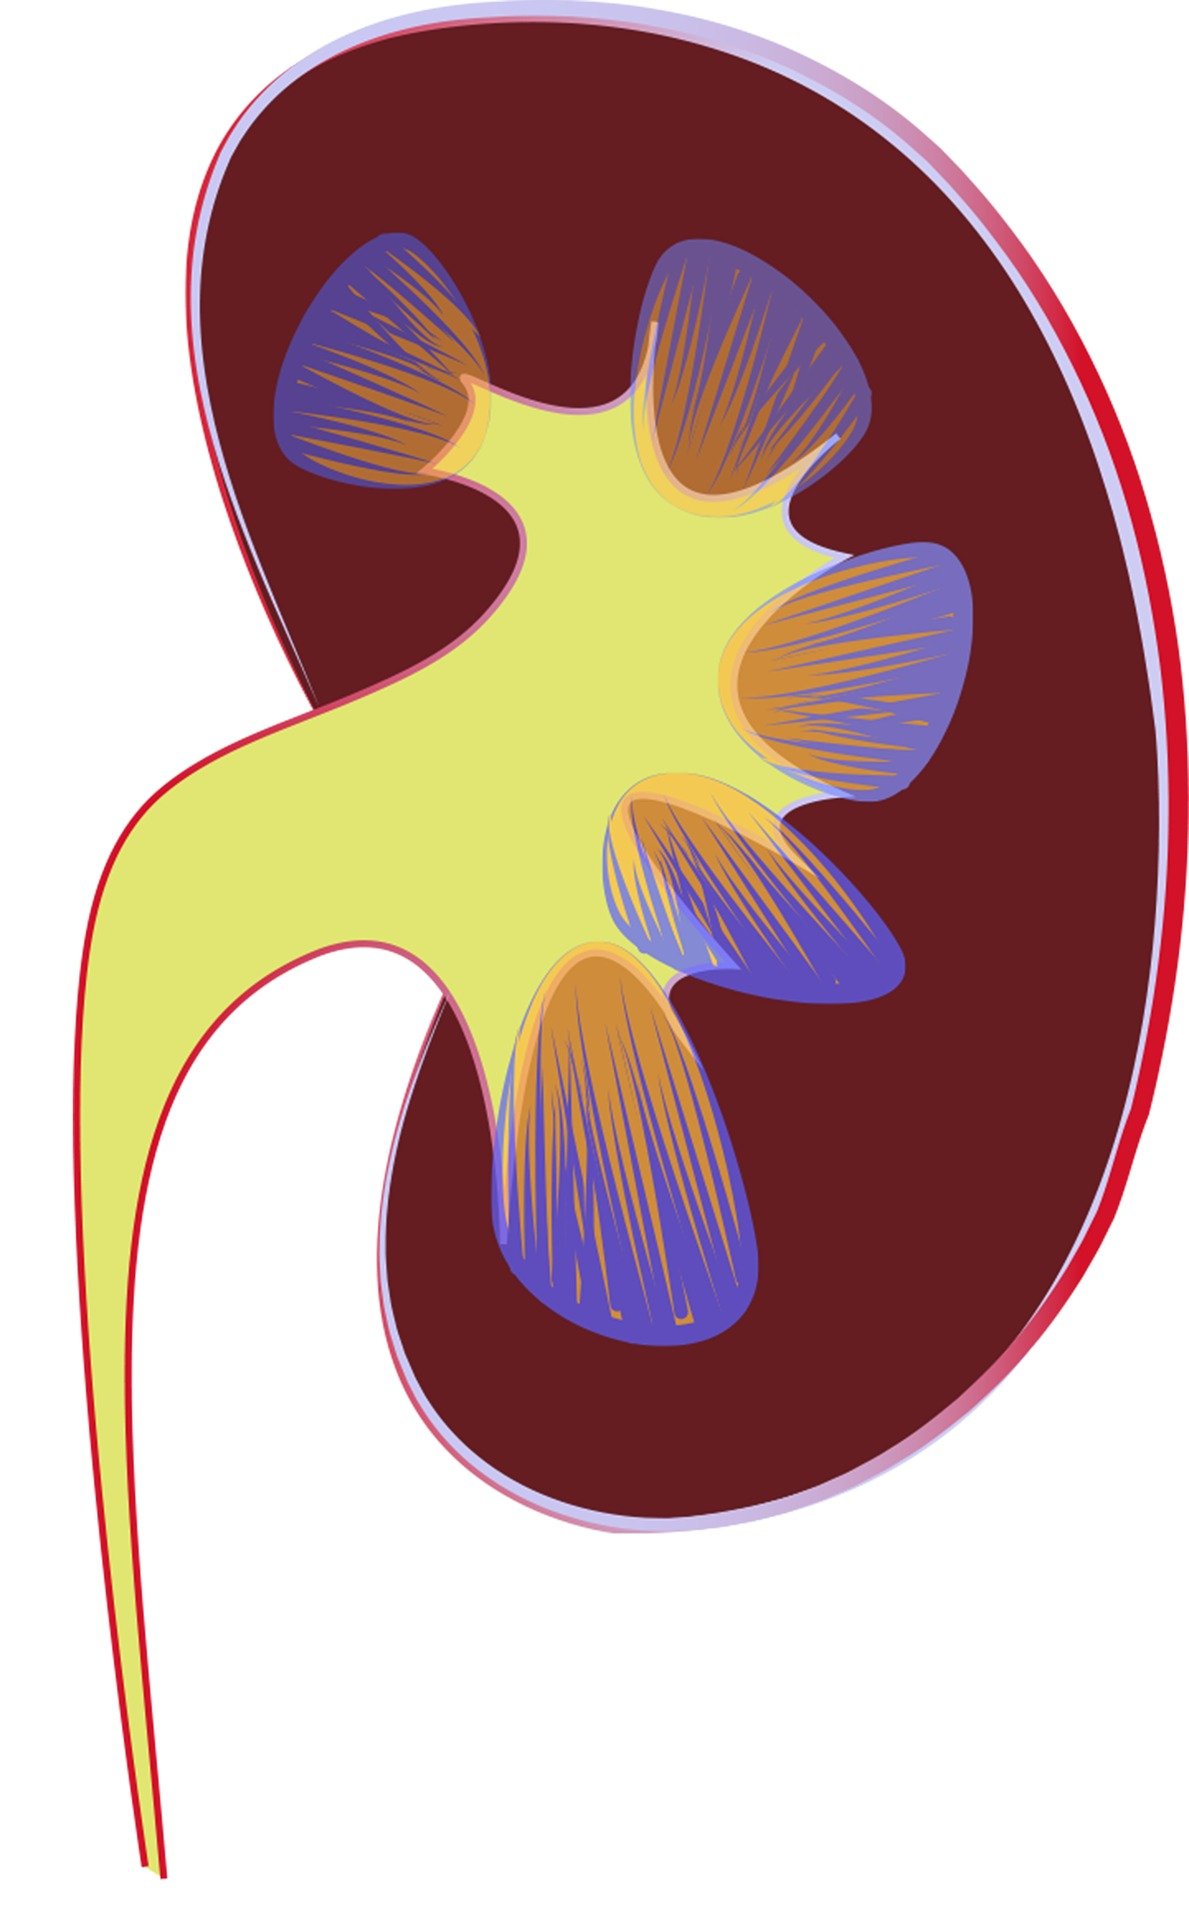 kidney-g219da059a_1920.jpg